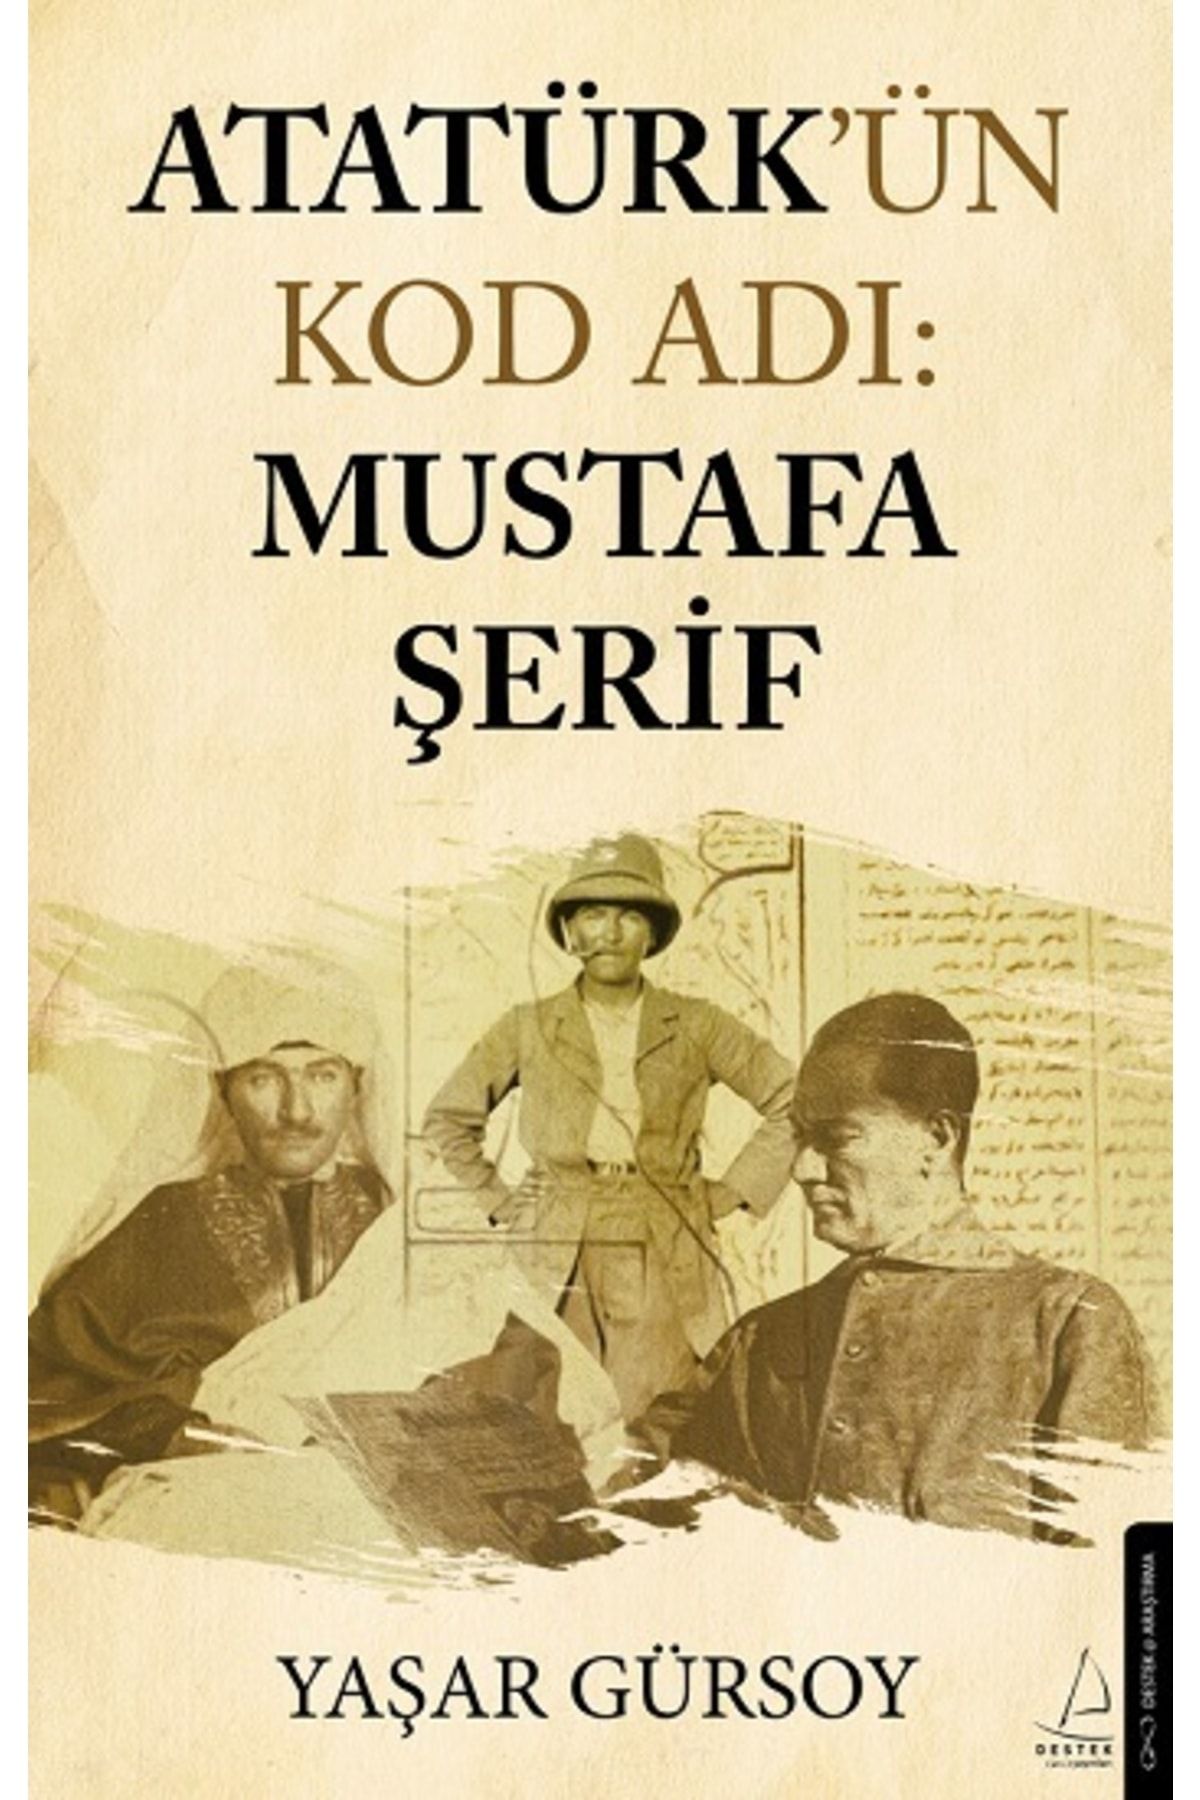 Destek Yayınları Atatürk’ün Kod Adı: Mustafa Şerif